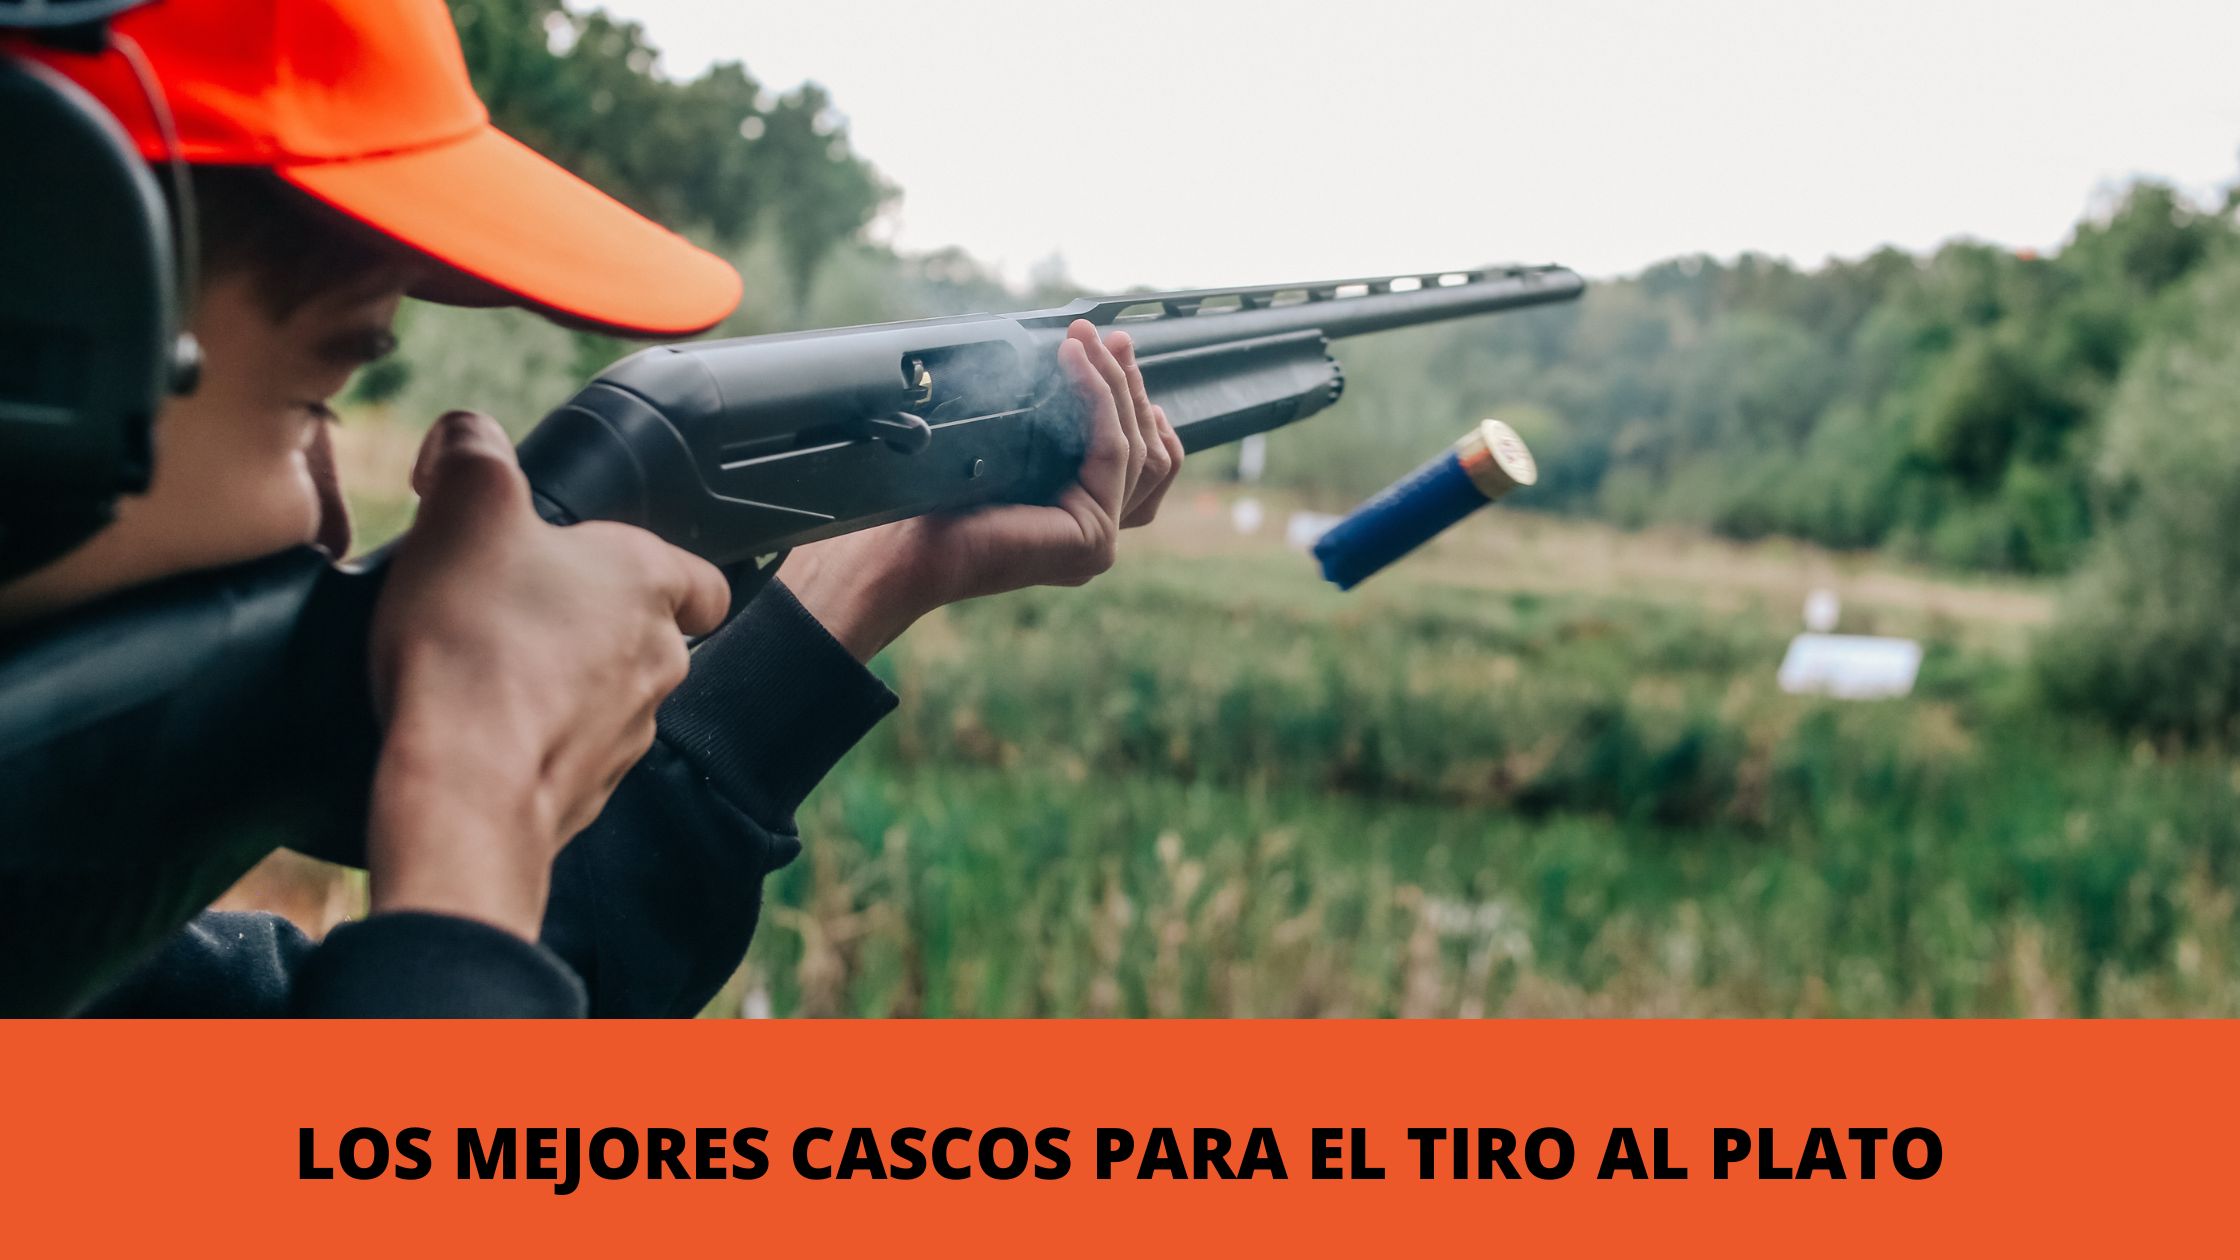 CASCOS DE TIRO: LA MEJOR PROTECCIÓN Y CONFORT PARA TU PRÁCTICA DEL